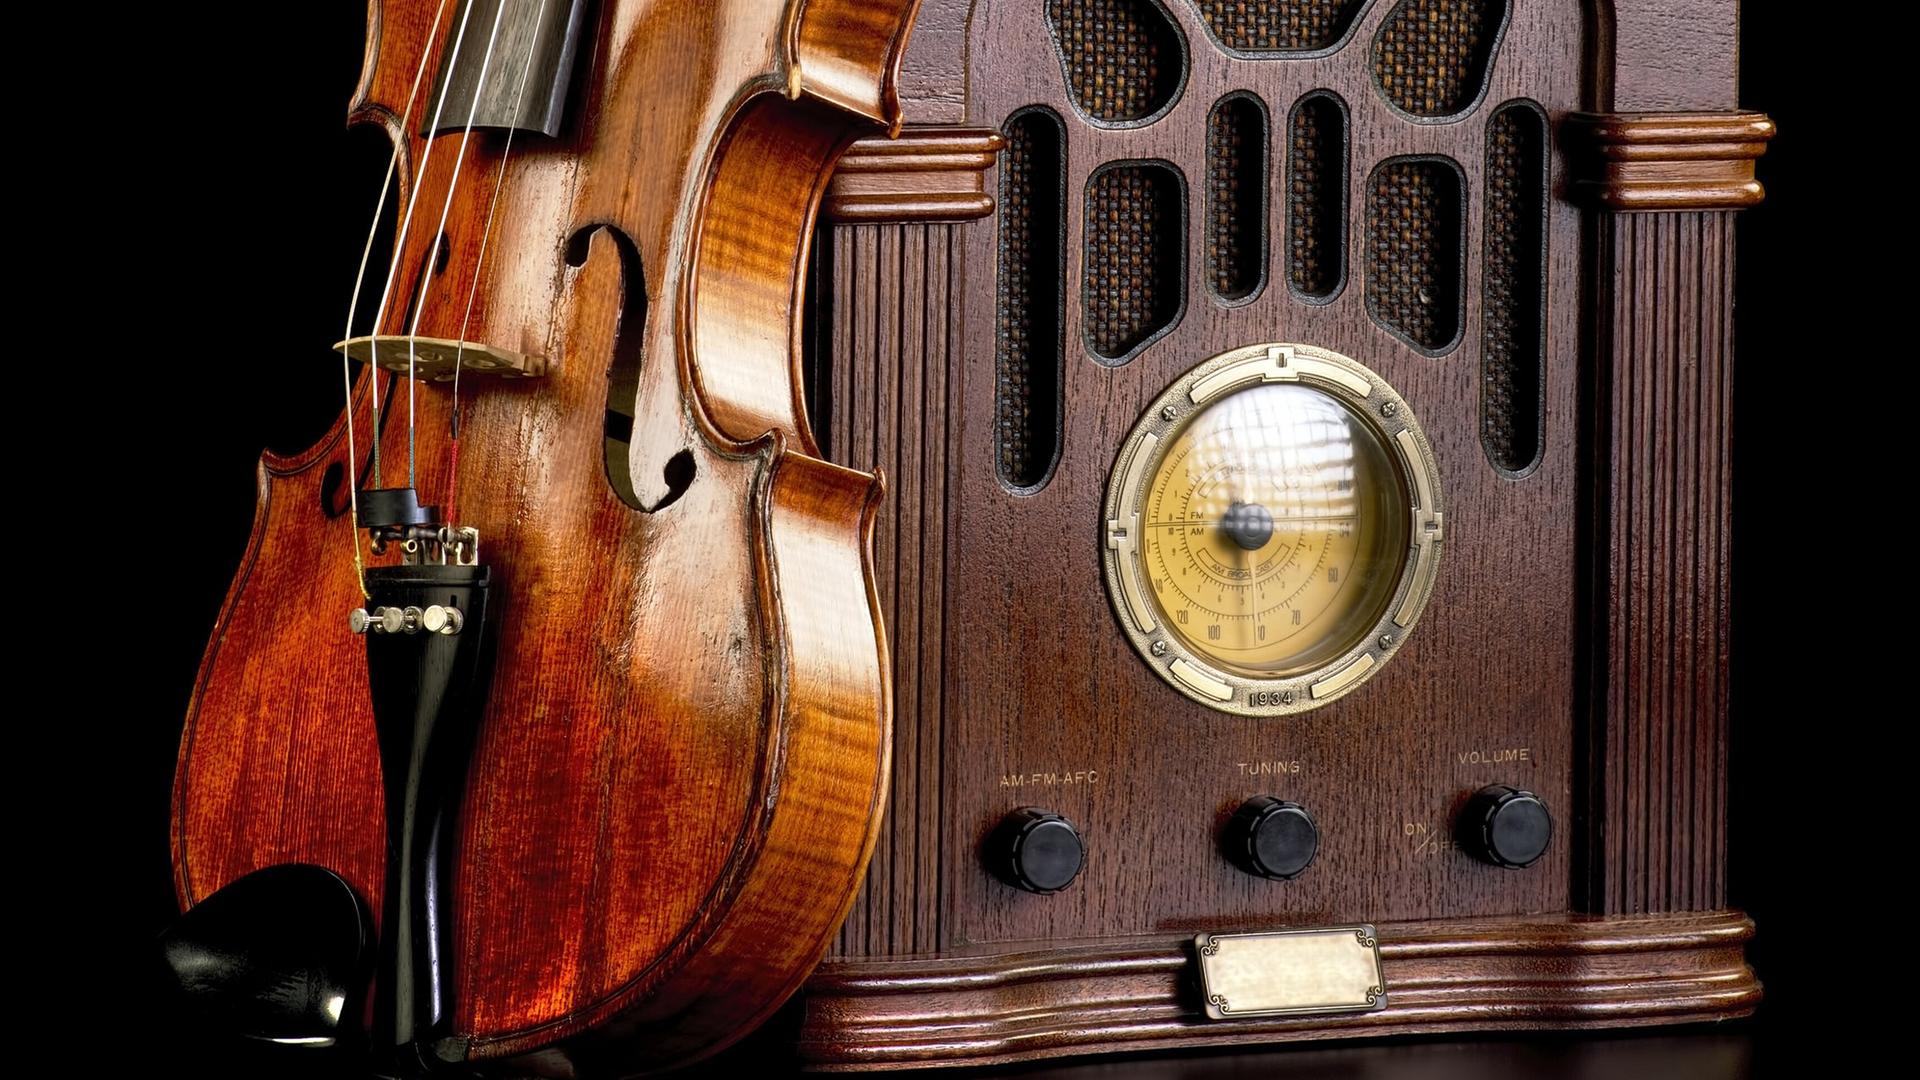 An einem historischen Radio lehnt eine Violine.